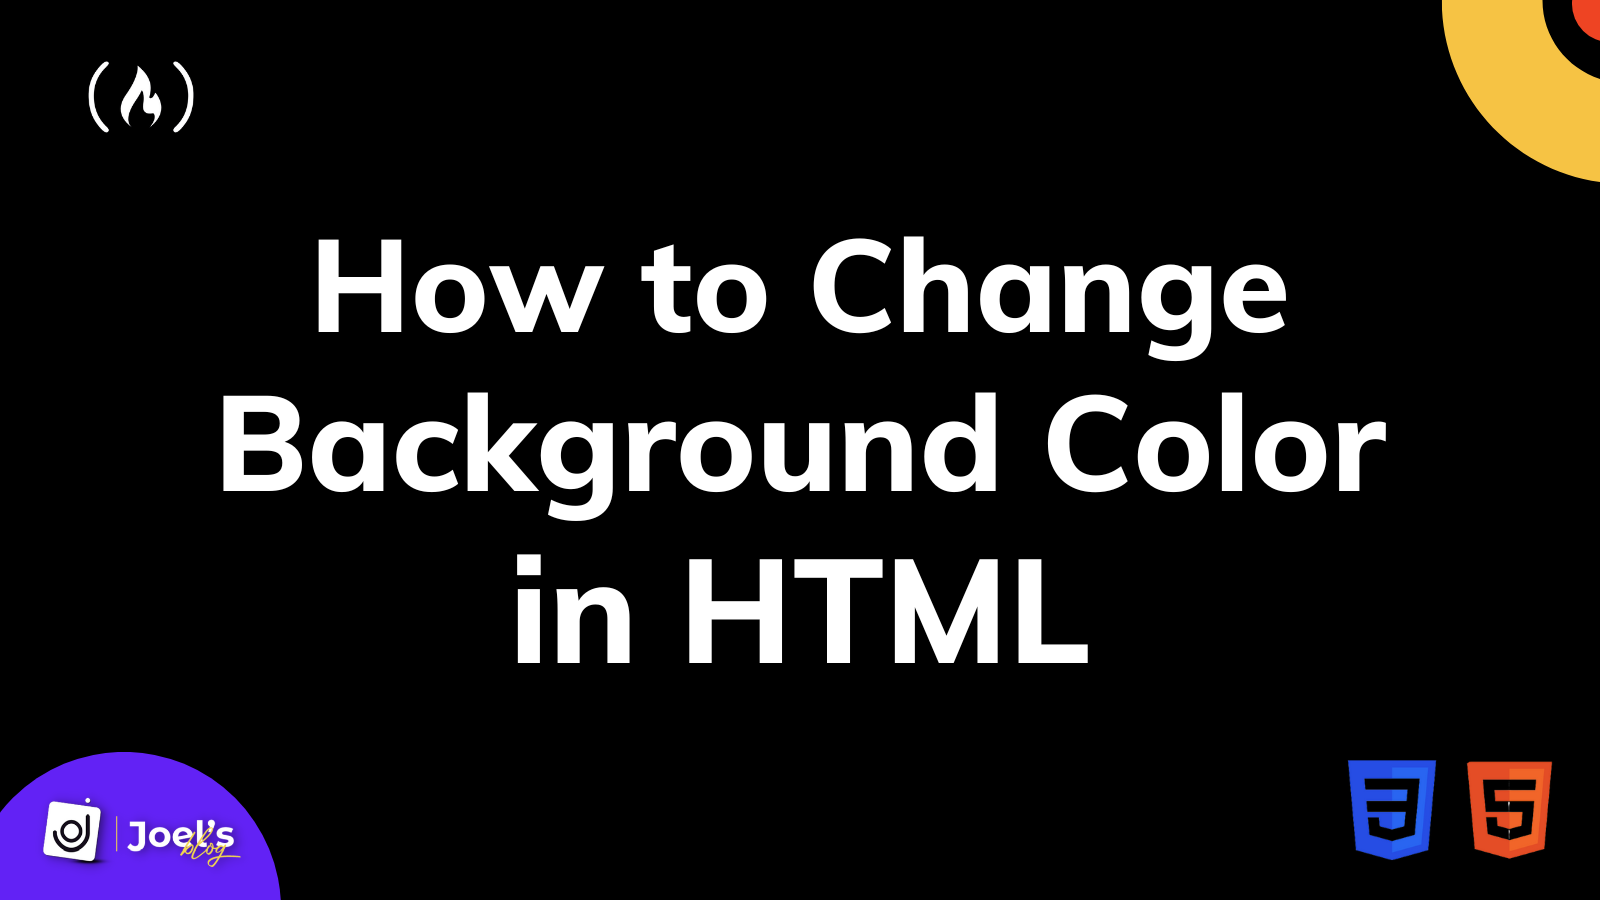 Hướng dẫn thay đổi màu nền HTML: Bạn có muốn thay đổi màu nền trang web của mình nhưng không biết cách? Đừng lo, hãy khám phá hướng dẫn thay đổi màu nền HTML bằng cách click vào hình ảnh liên quan để biết thêm chi tiết.